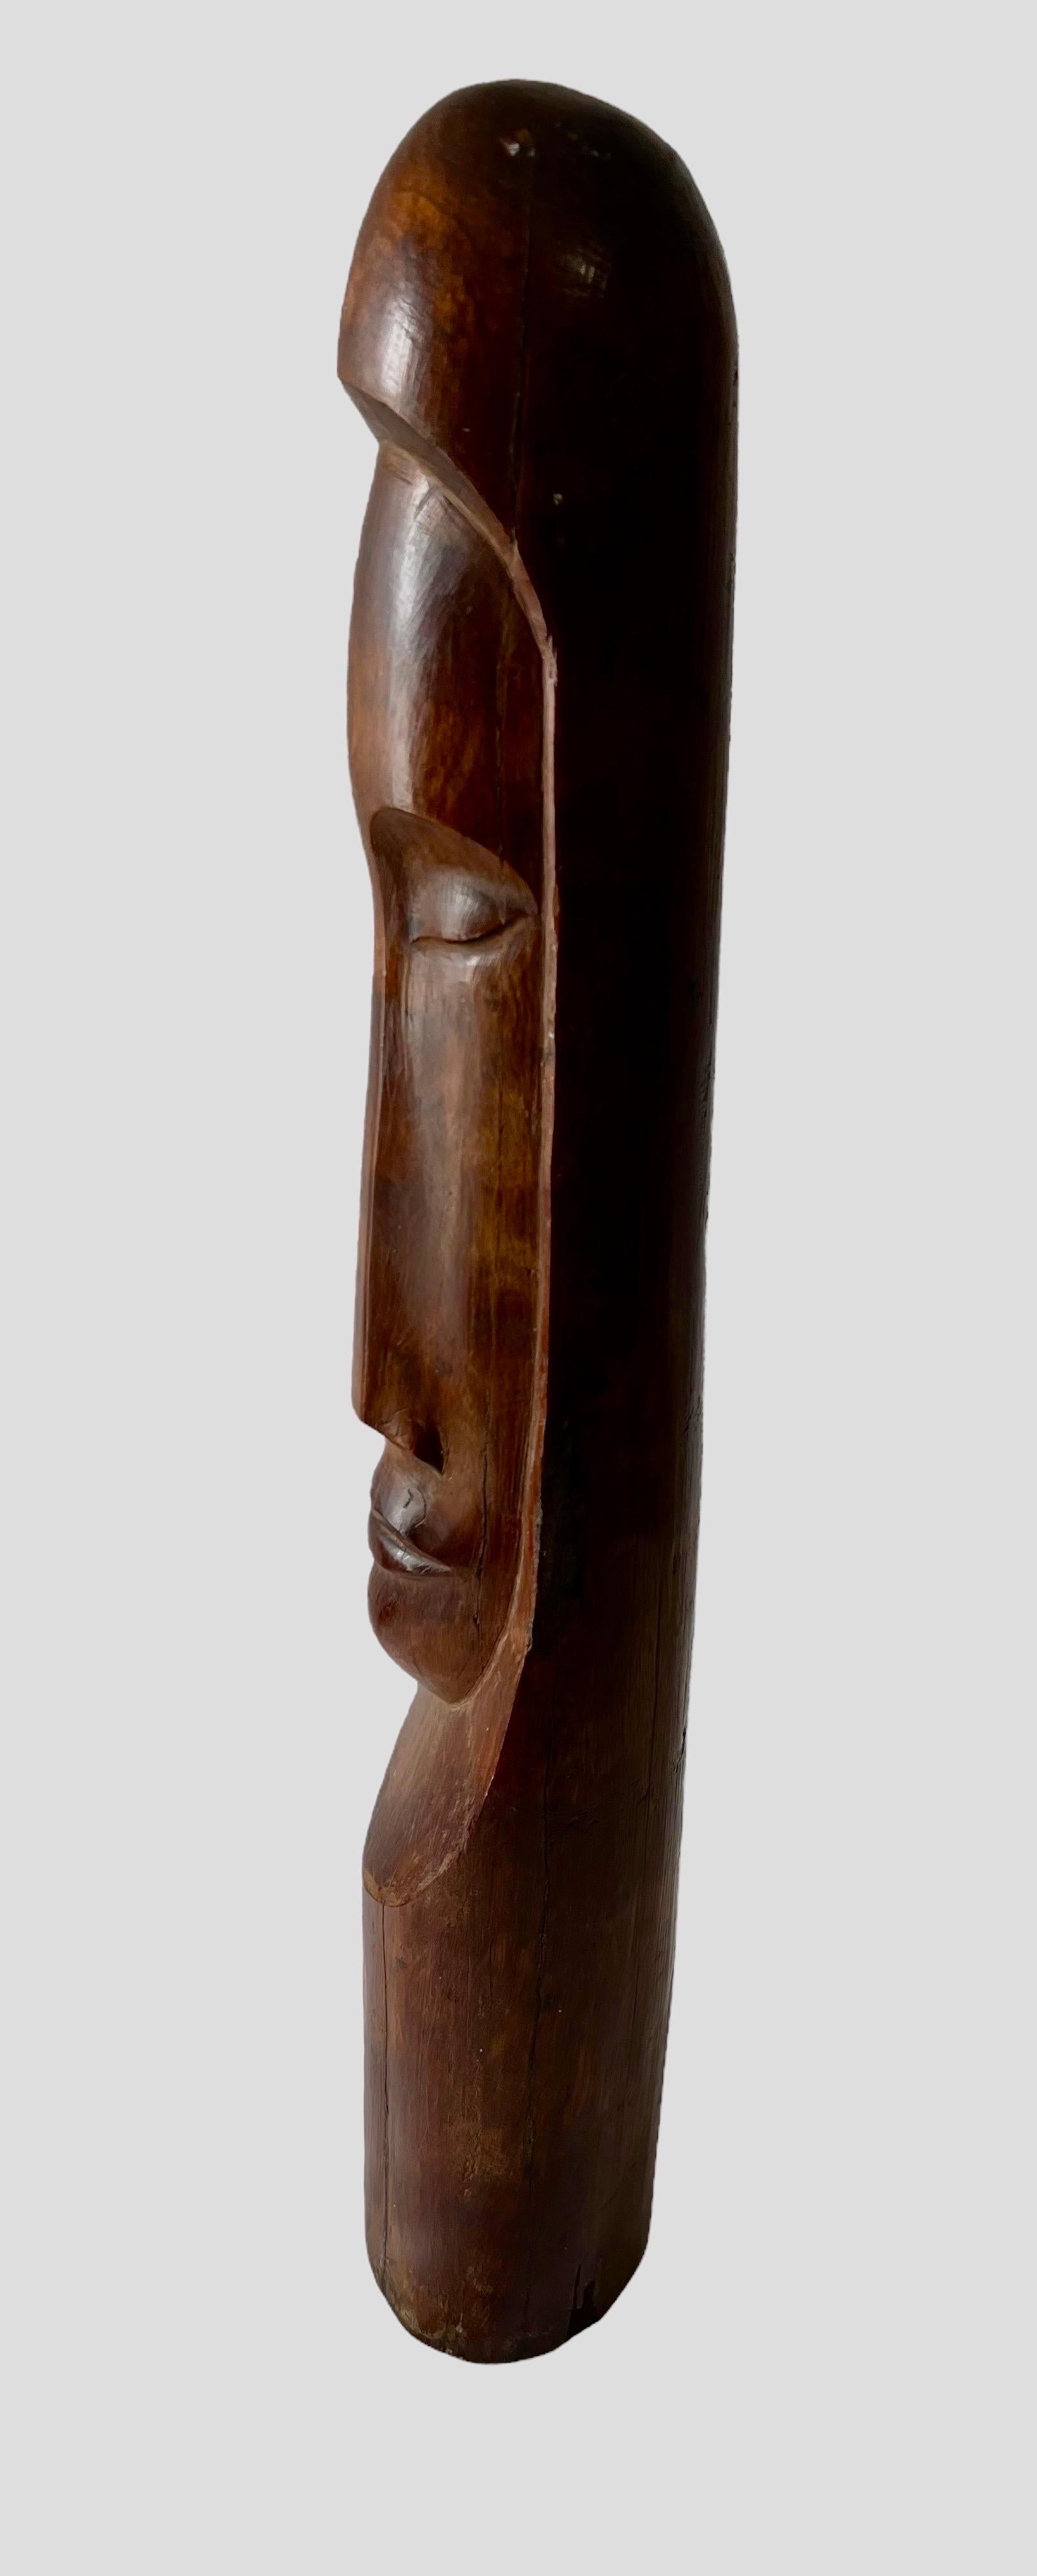 Cuban Master Florencio Gelabert Sculpture Large Wood Carving Bust Man Portrait For Sale 3